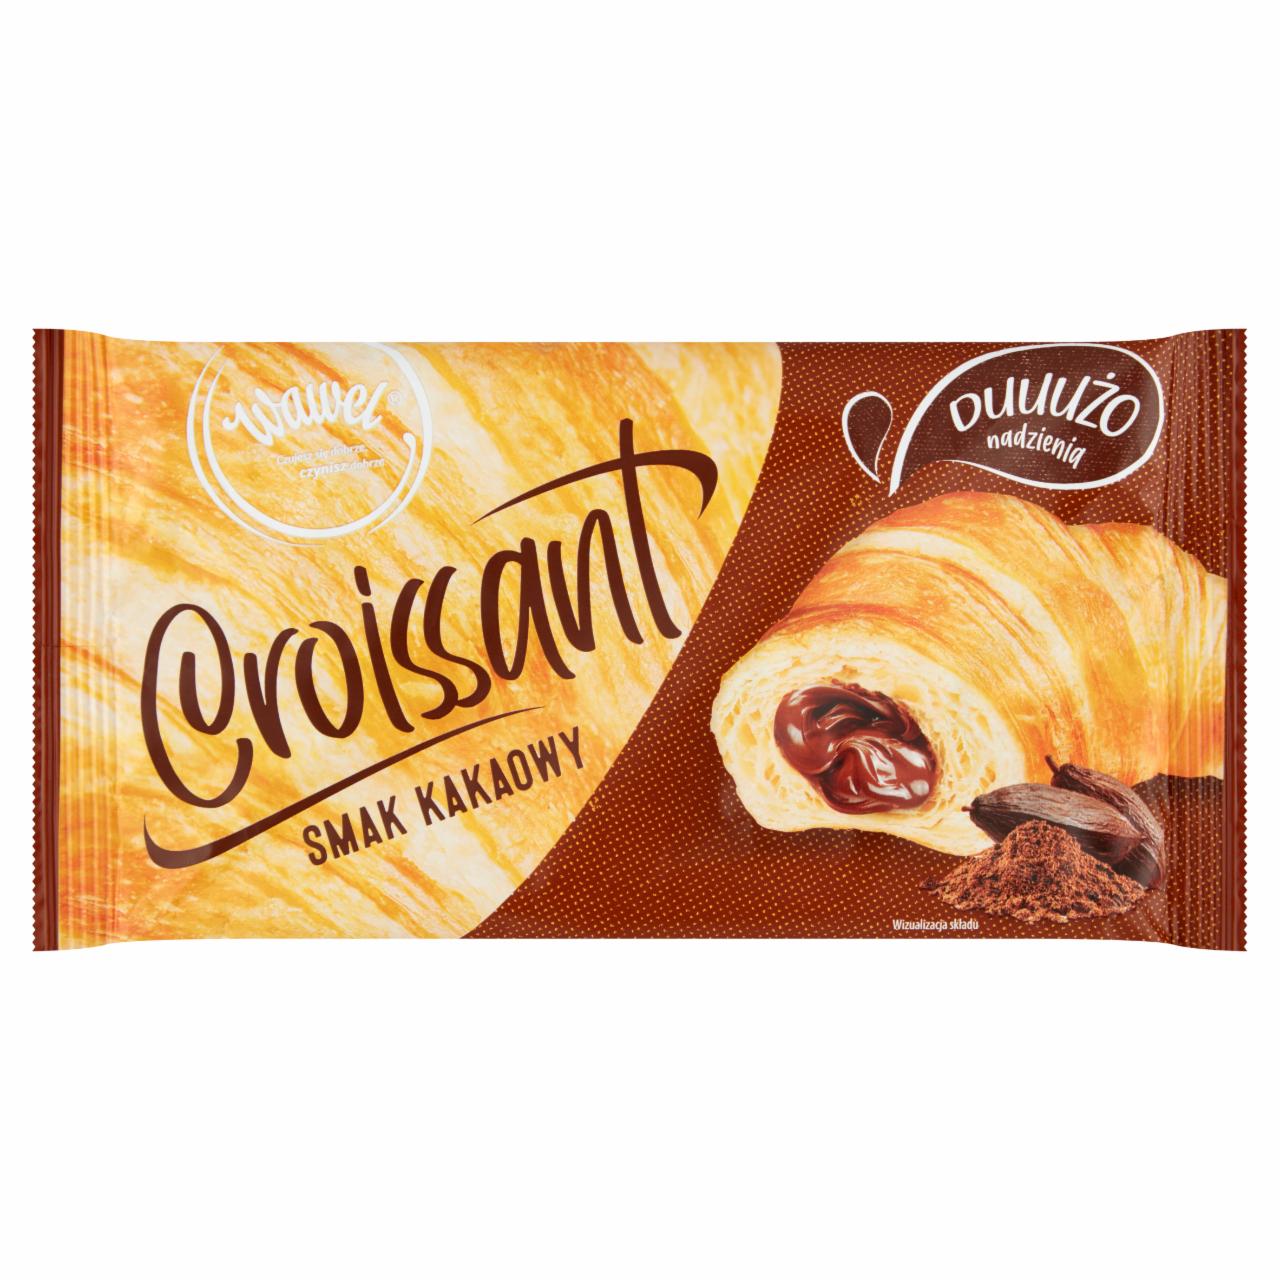 Zdjęcia - Wawel Croissant nadzienie kakaowe 50 g